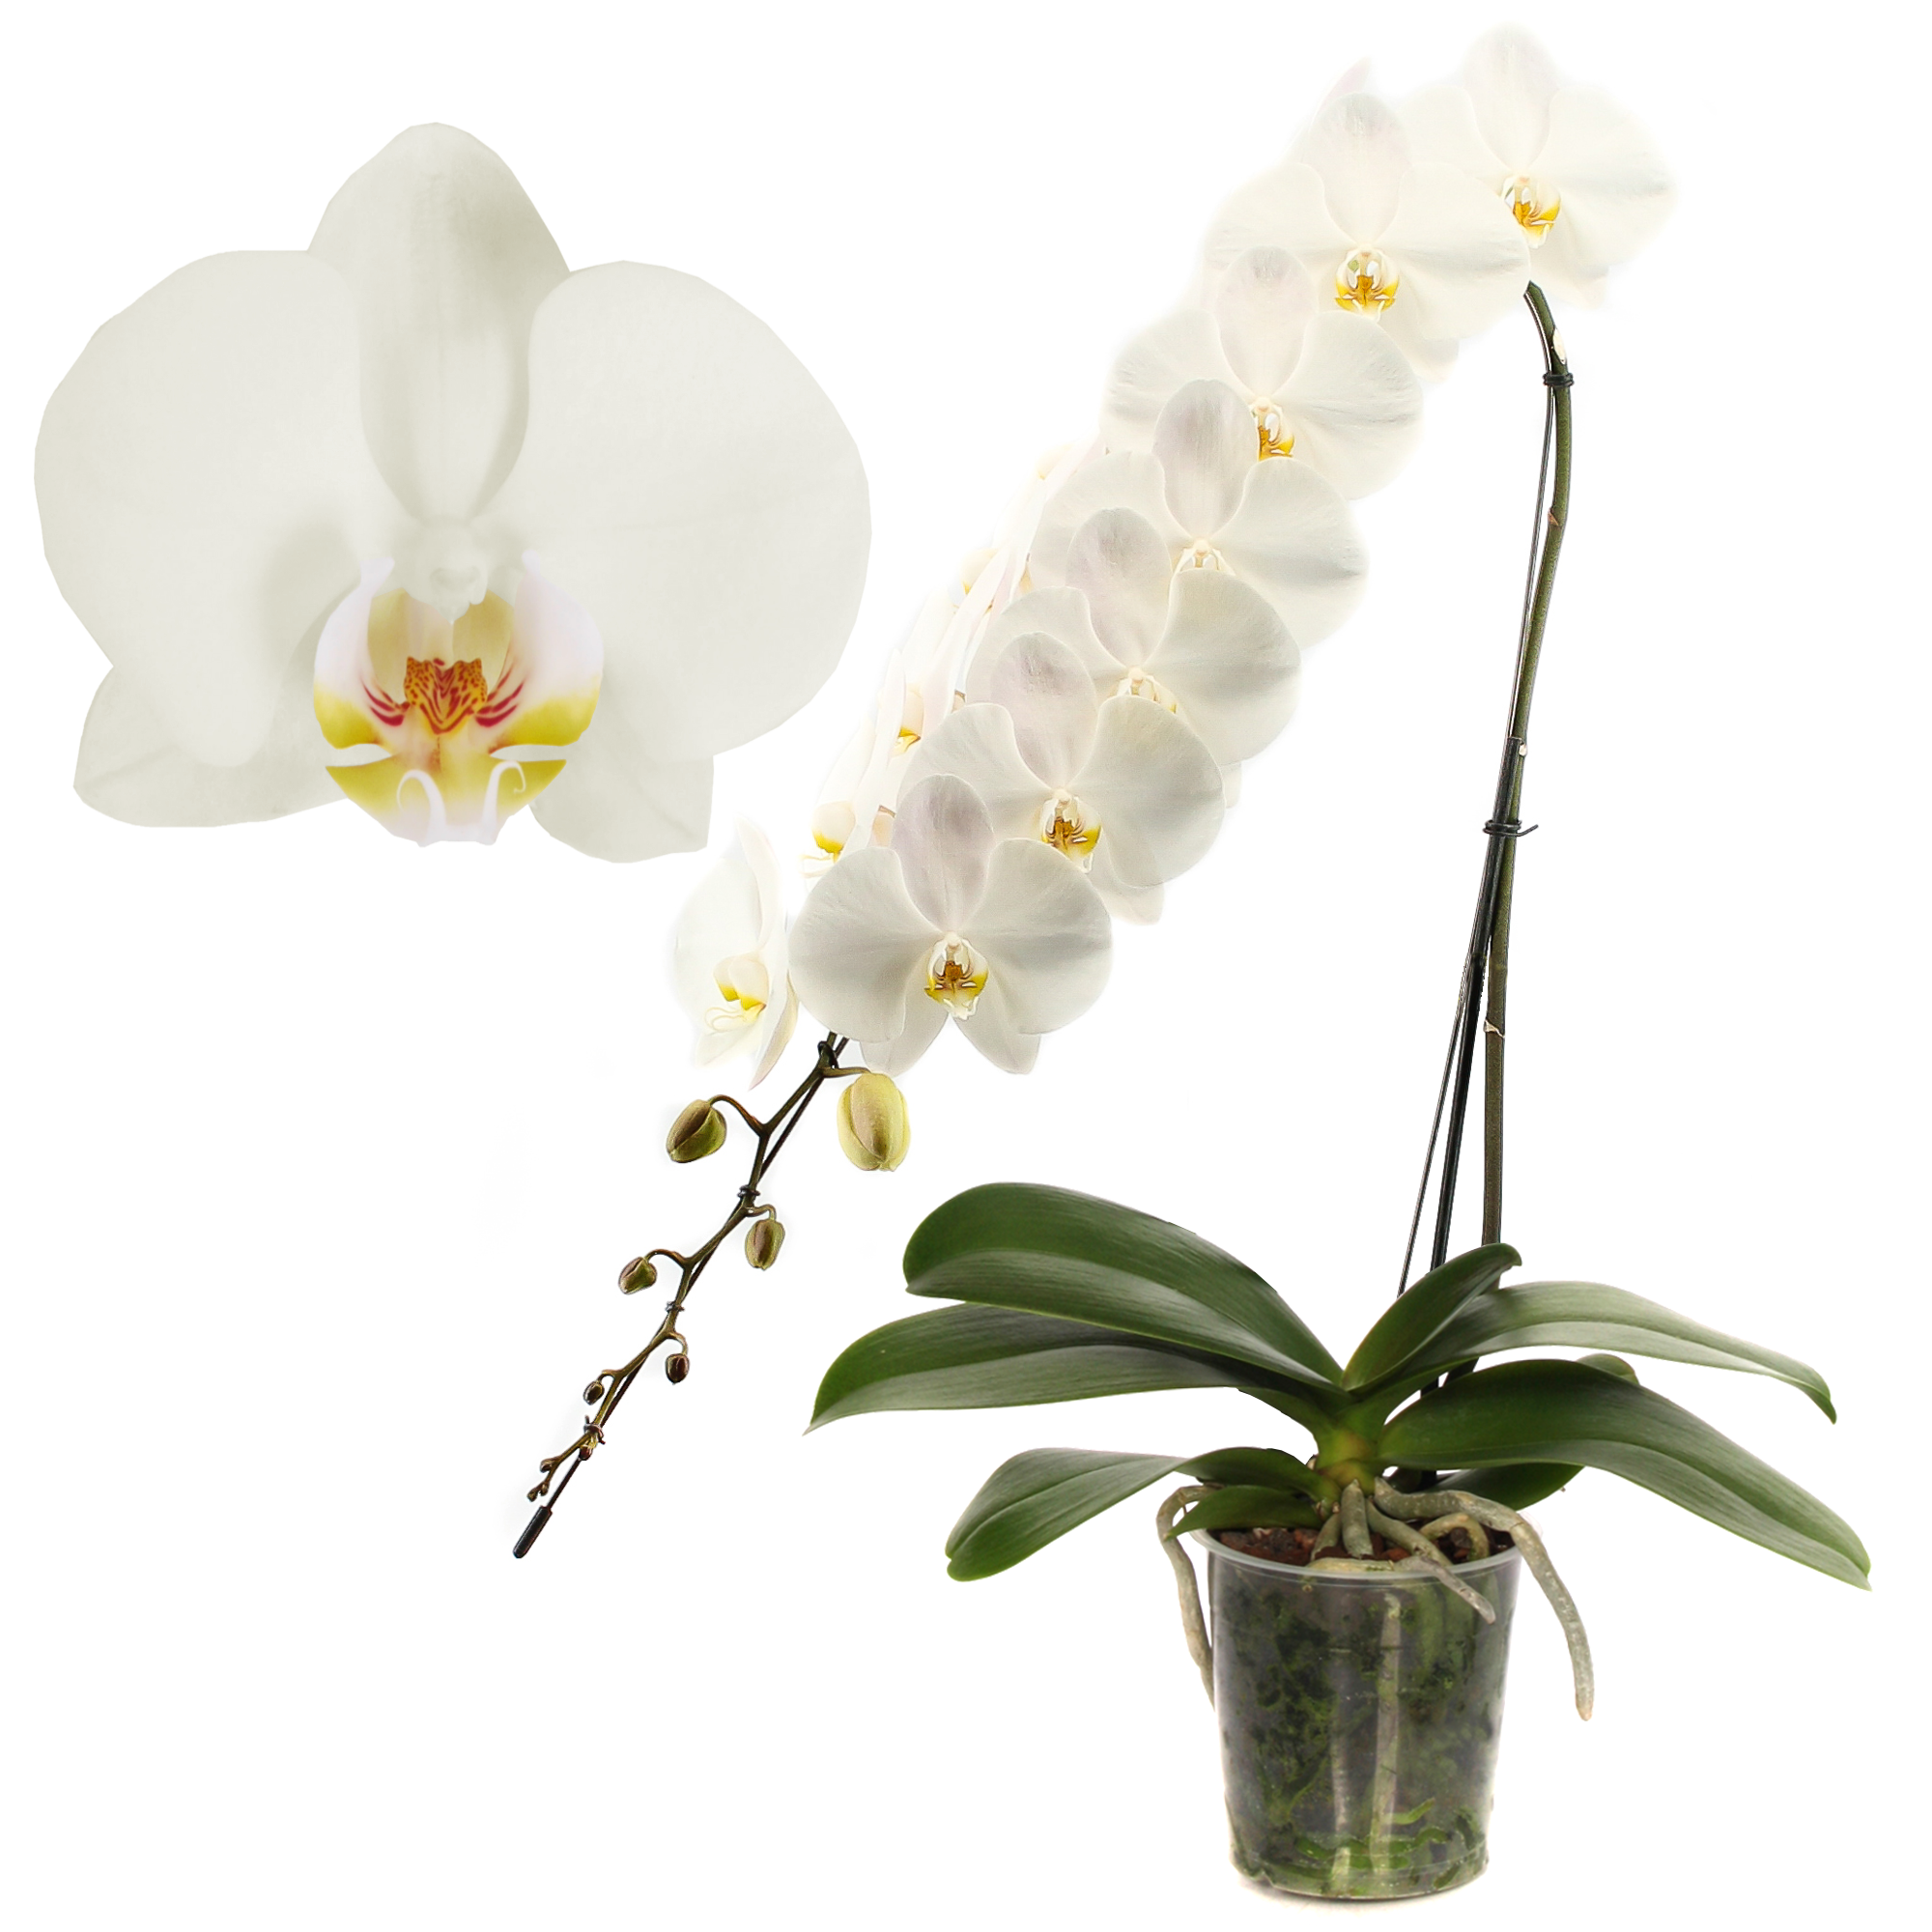 Schmetterlingsorchidee 'Formidablo'  1 Rispe weiß, 15 cm Topf + product picture